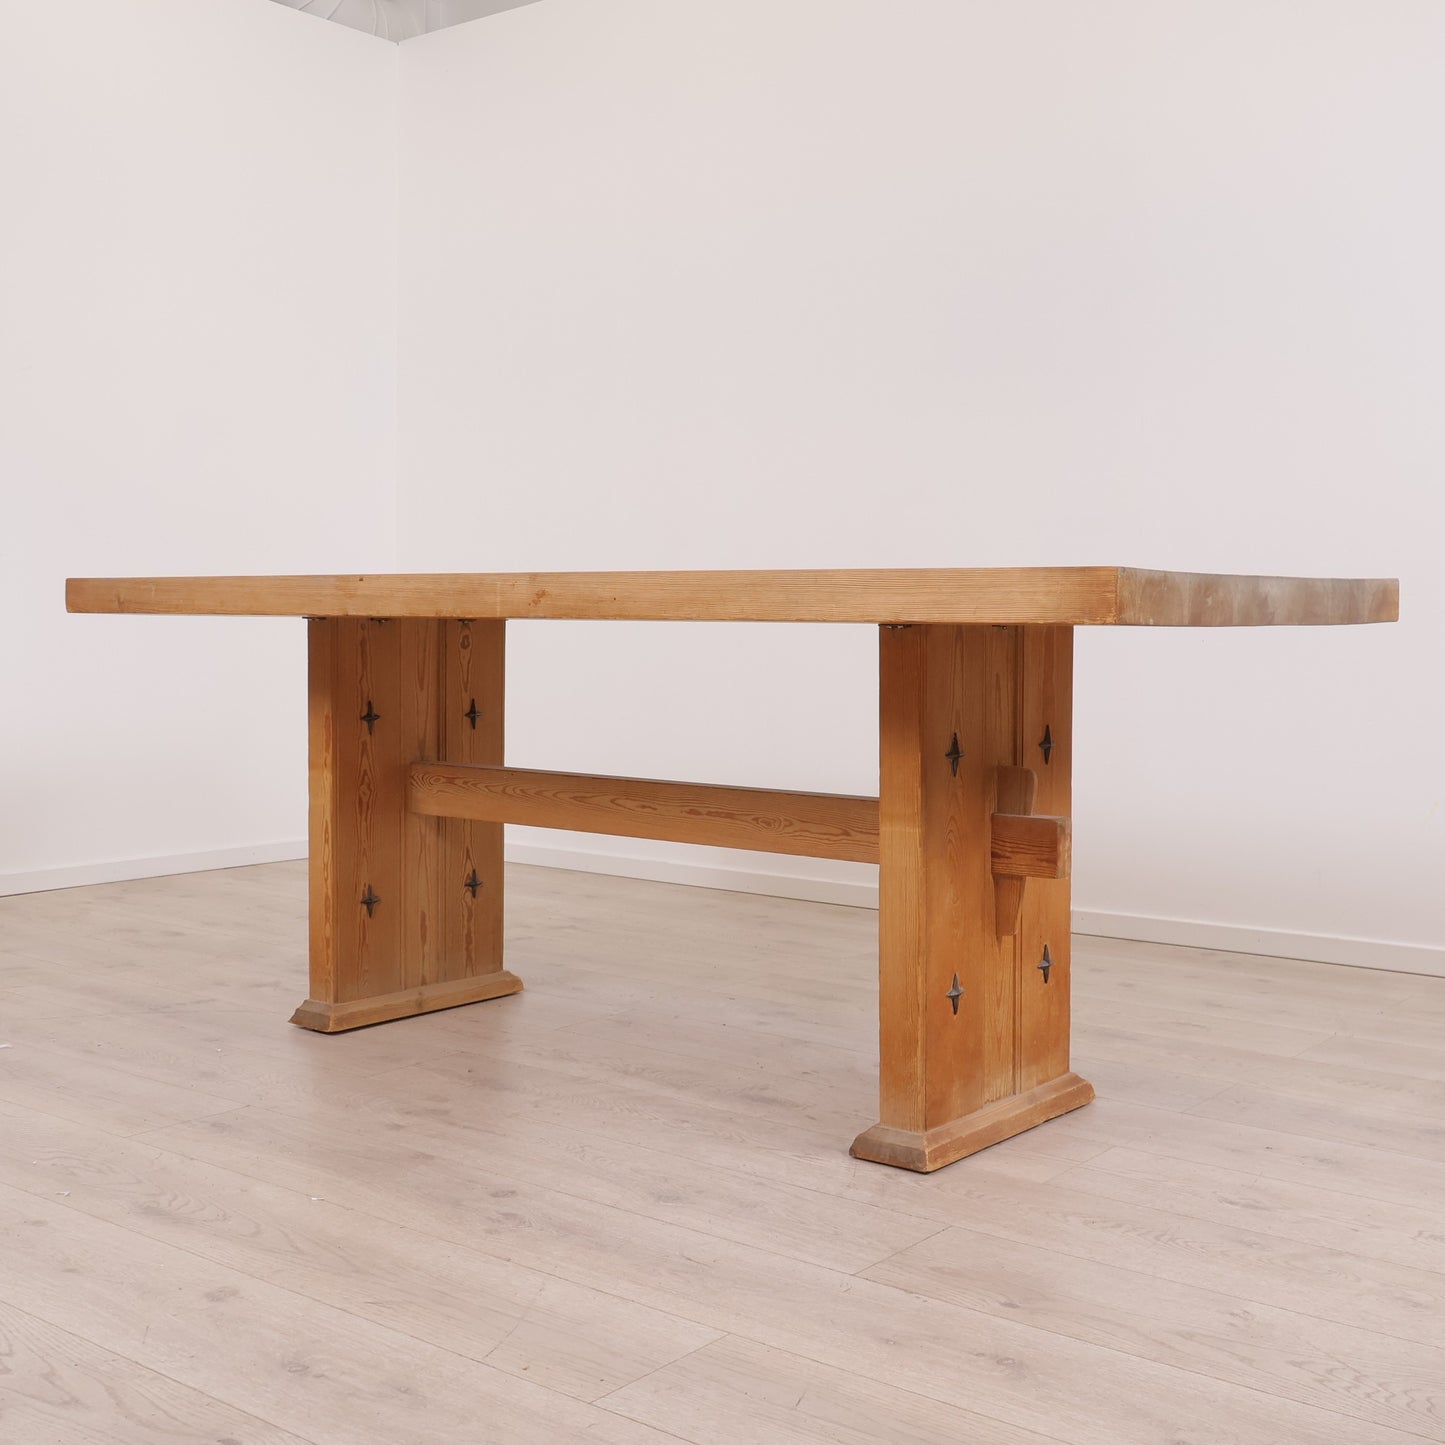 2000x84 cm, solid spisebord i treverk